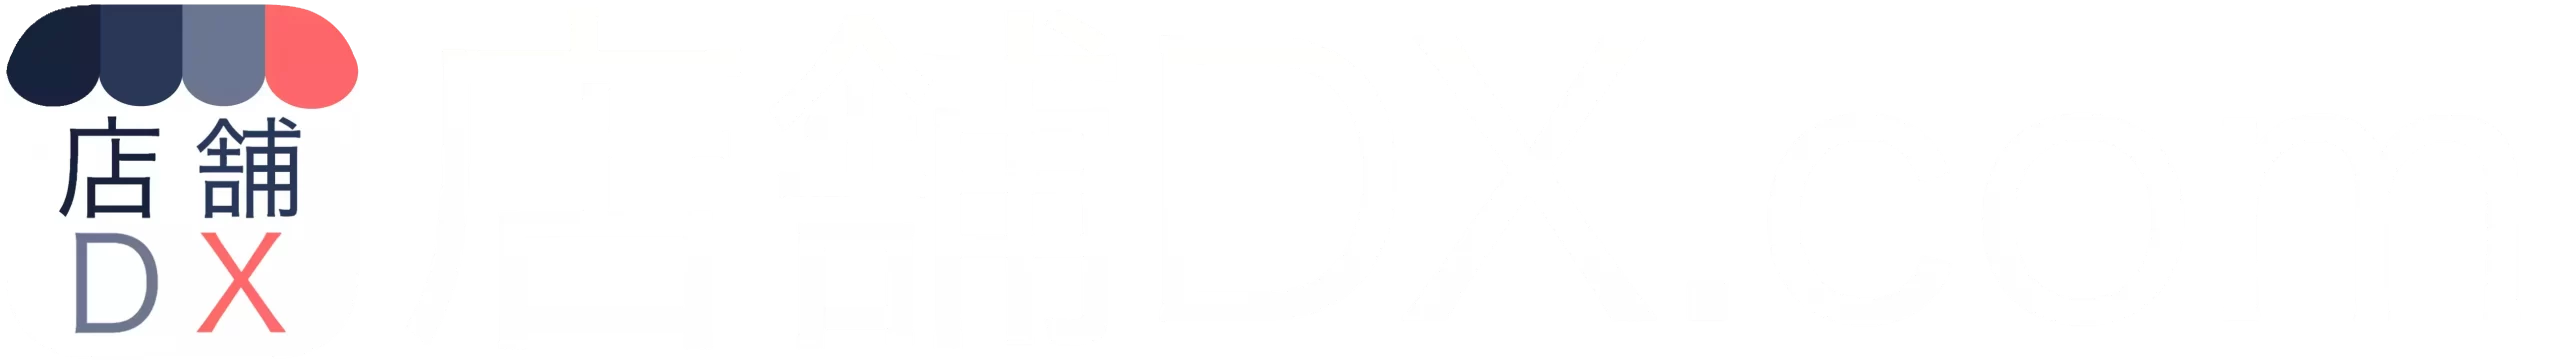 店舗運営に役立つ情報メディア店舗DX.com